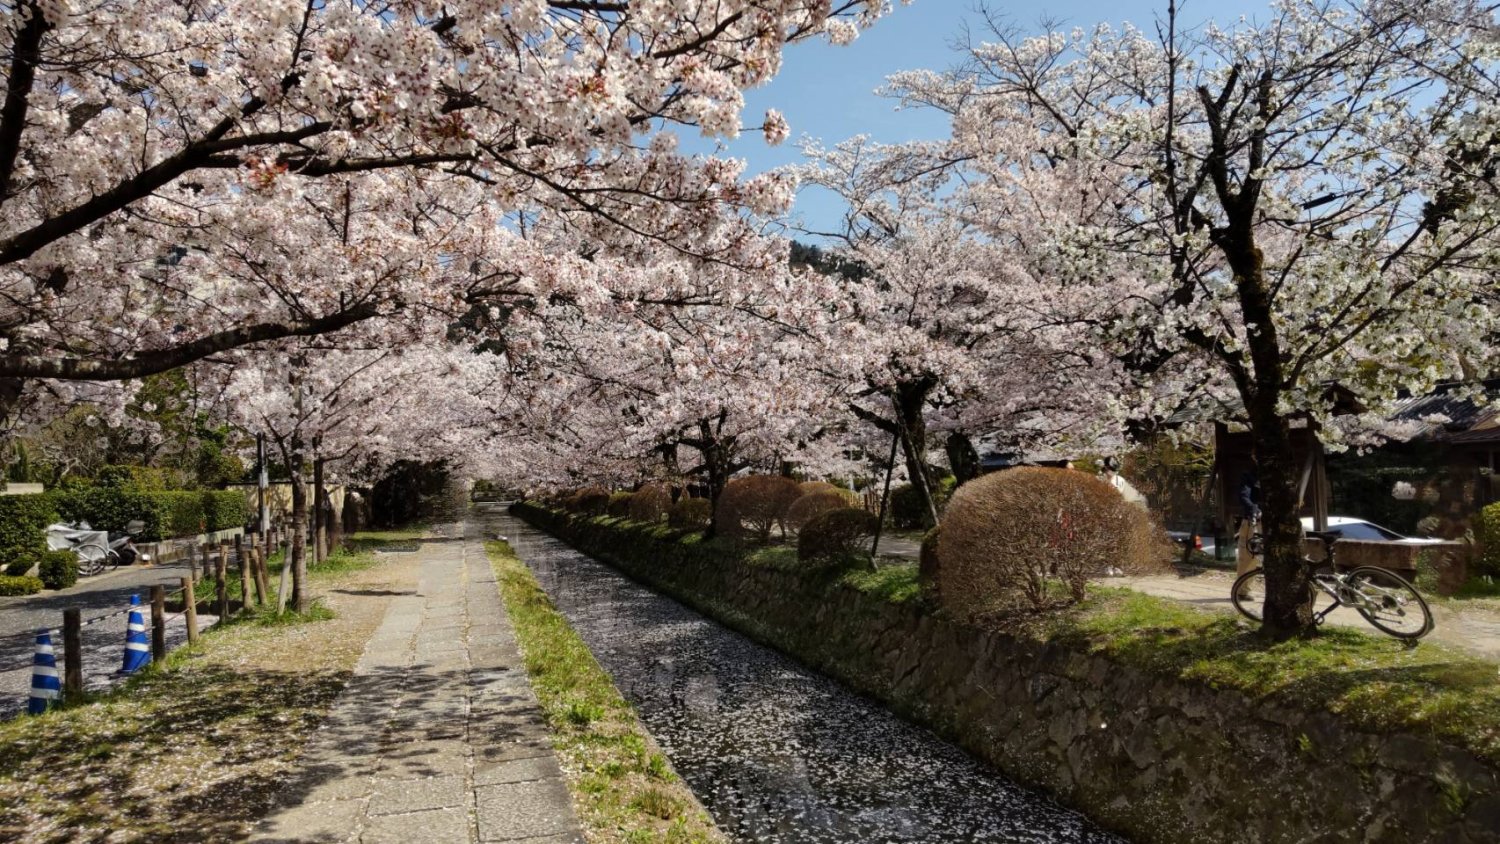 桜の花びらがひらひらと舞い散る季節。風を感じながら眺めたい。